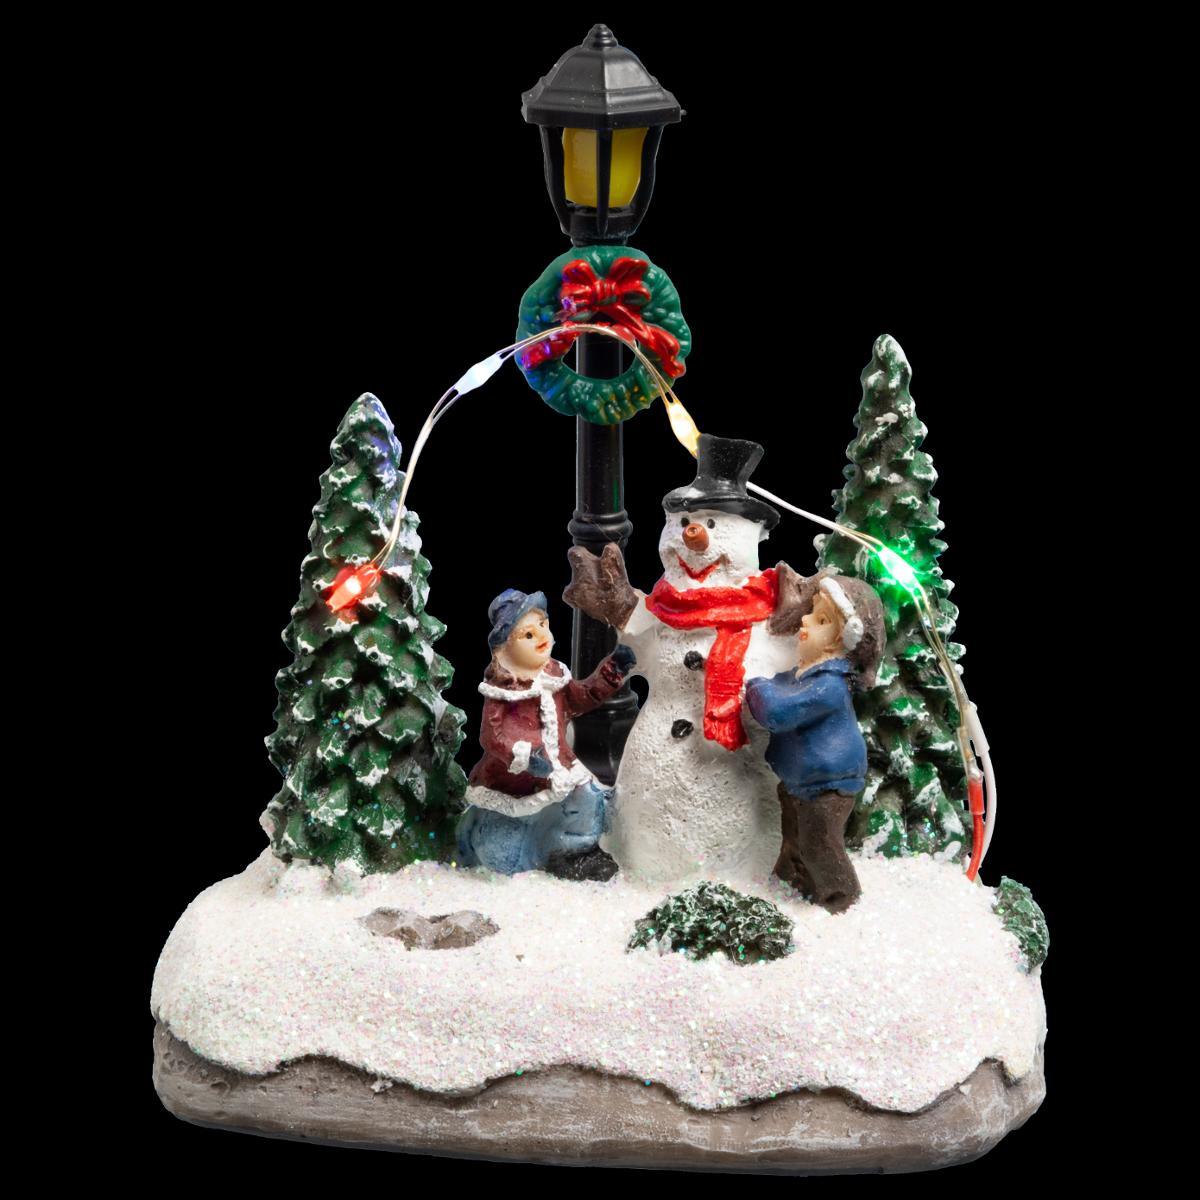 Achat Village de Noel Miniature du Père Noel 17 LED Blanc Chaud